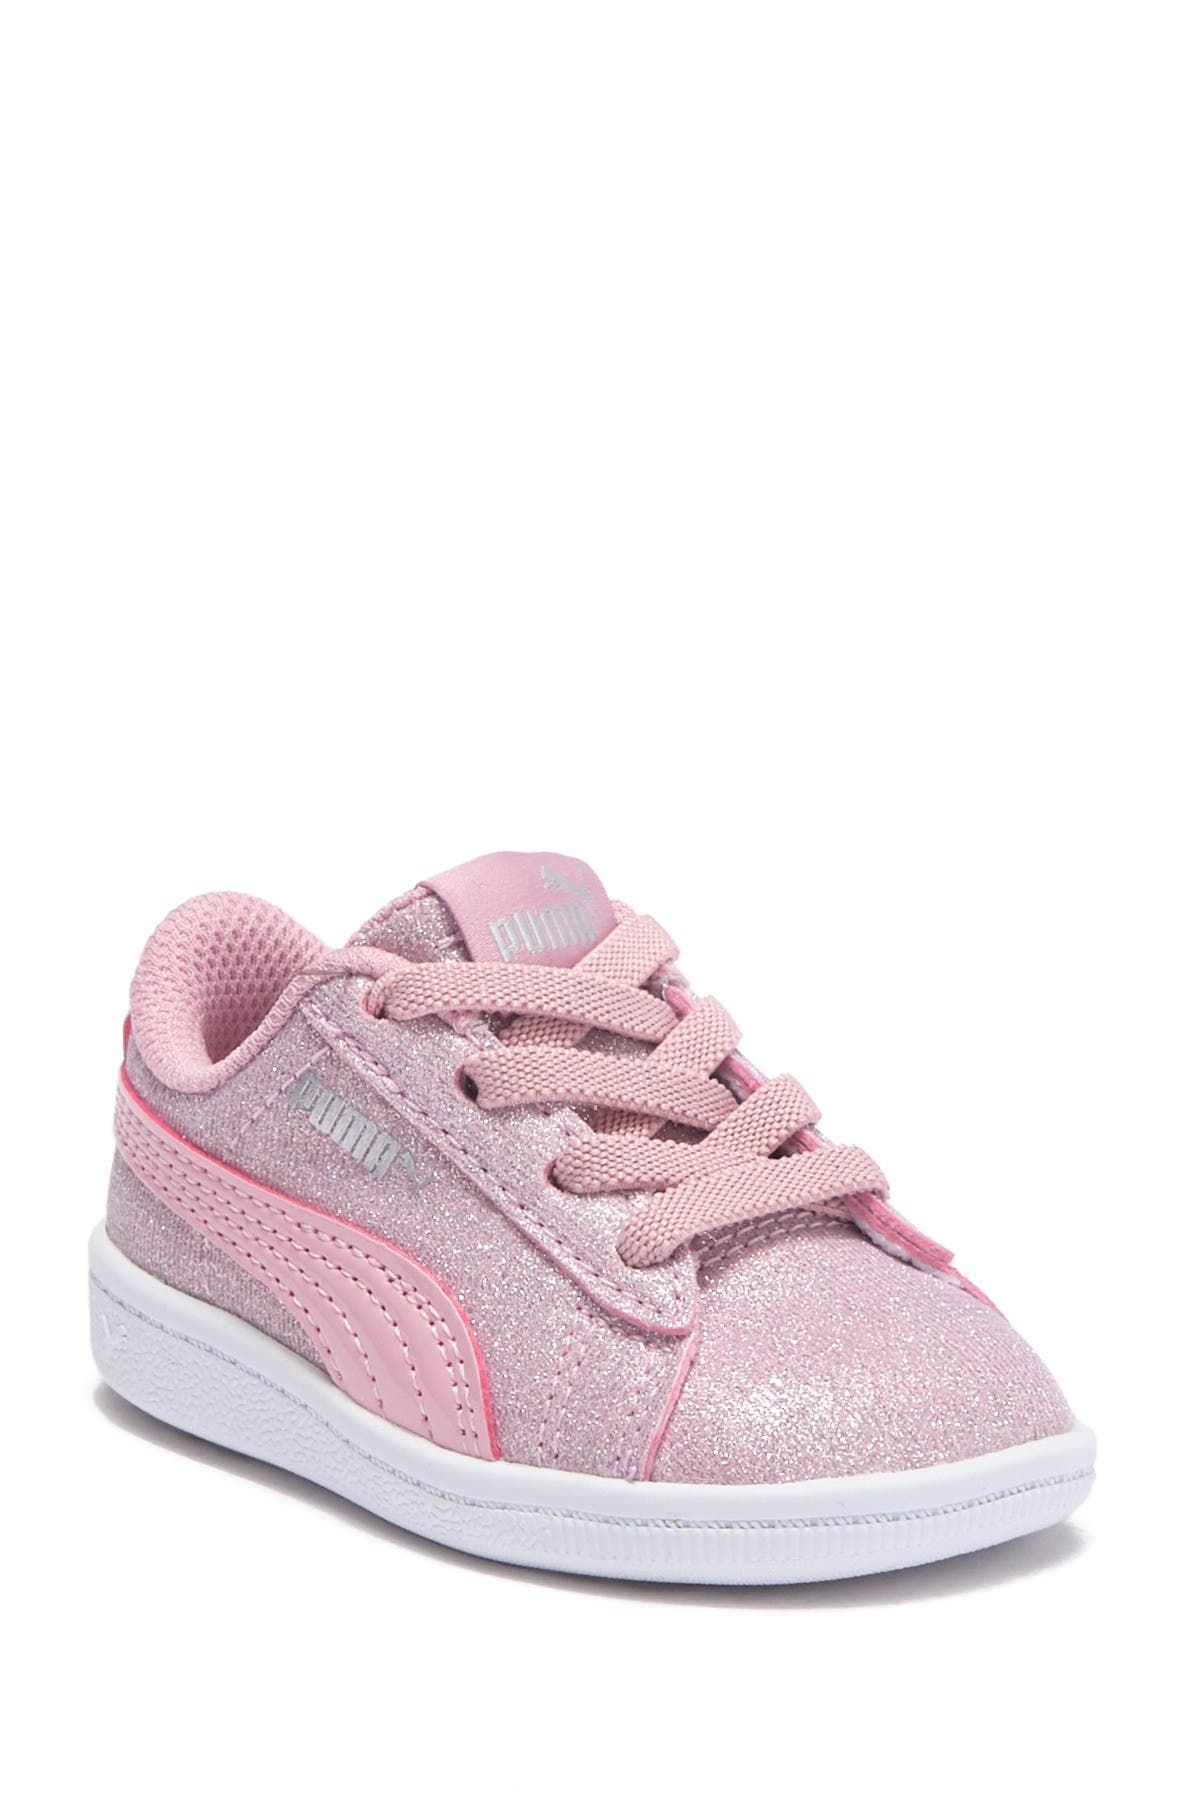 puma infant girl shoes